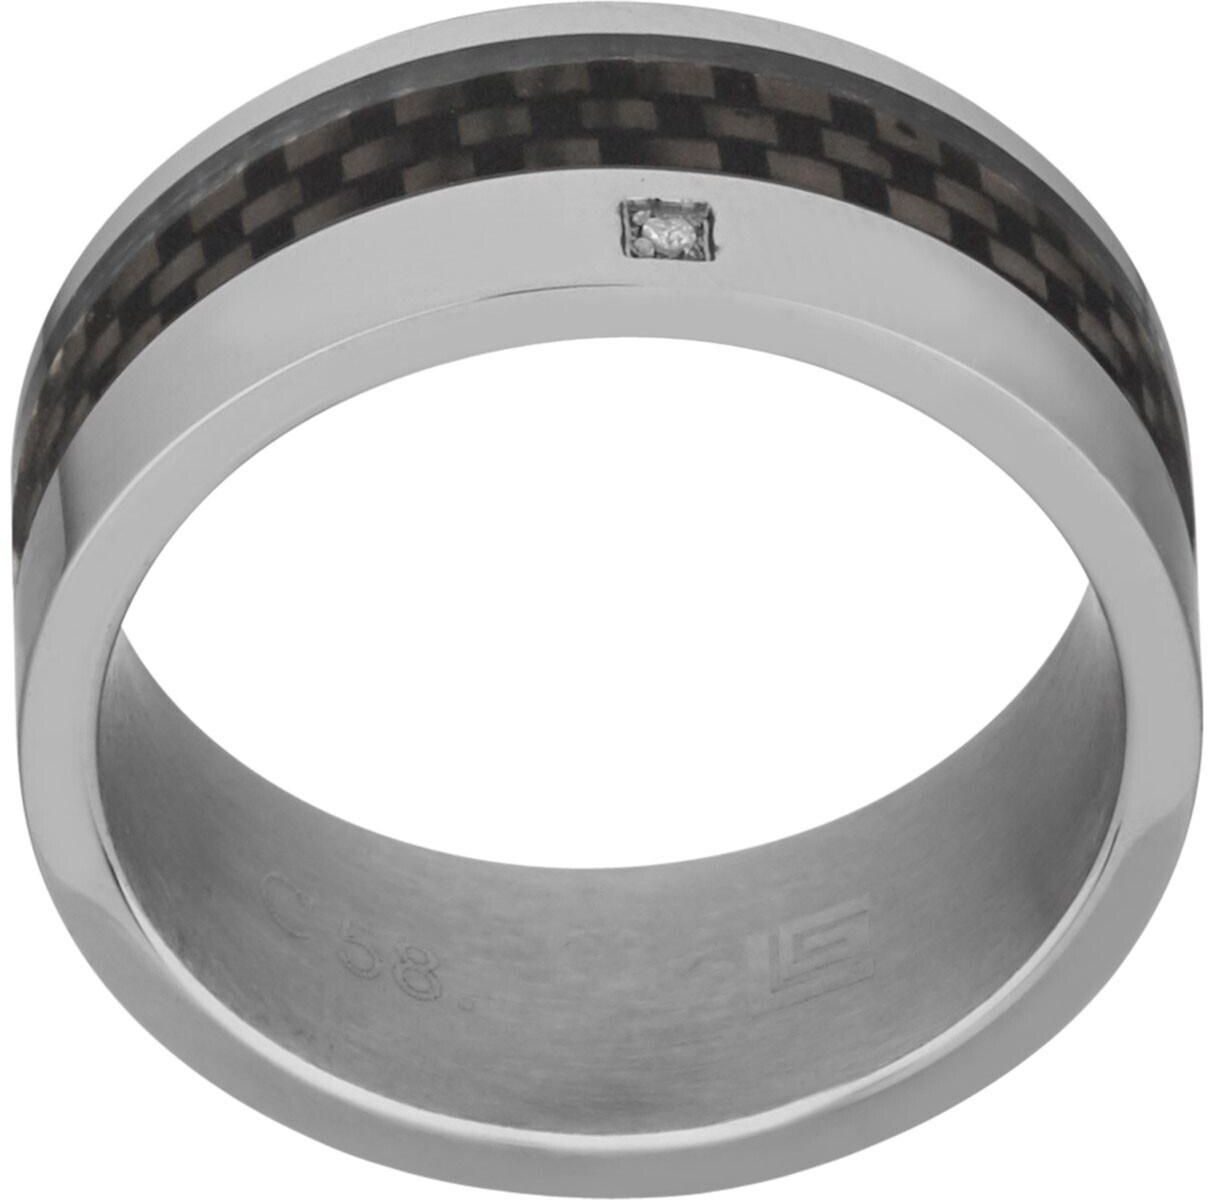 Guy Laroche Stainless Steel Ring with Carbon Fiber Sz 58 For Men, 4TN013AVB-58